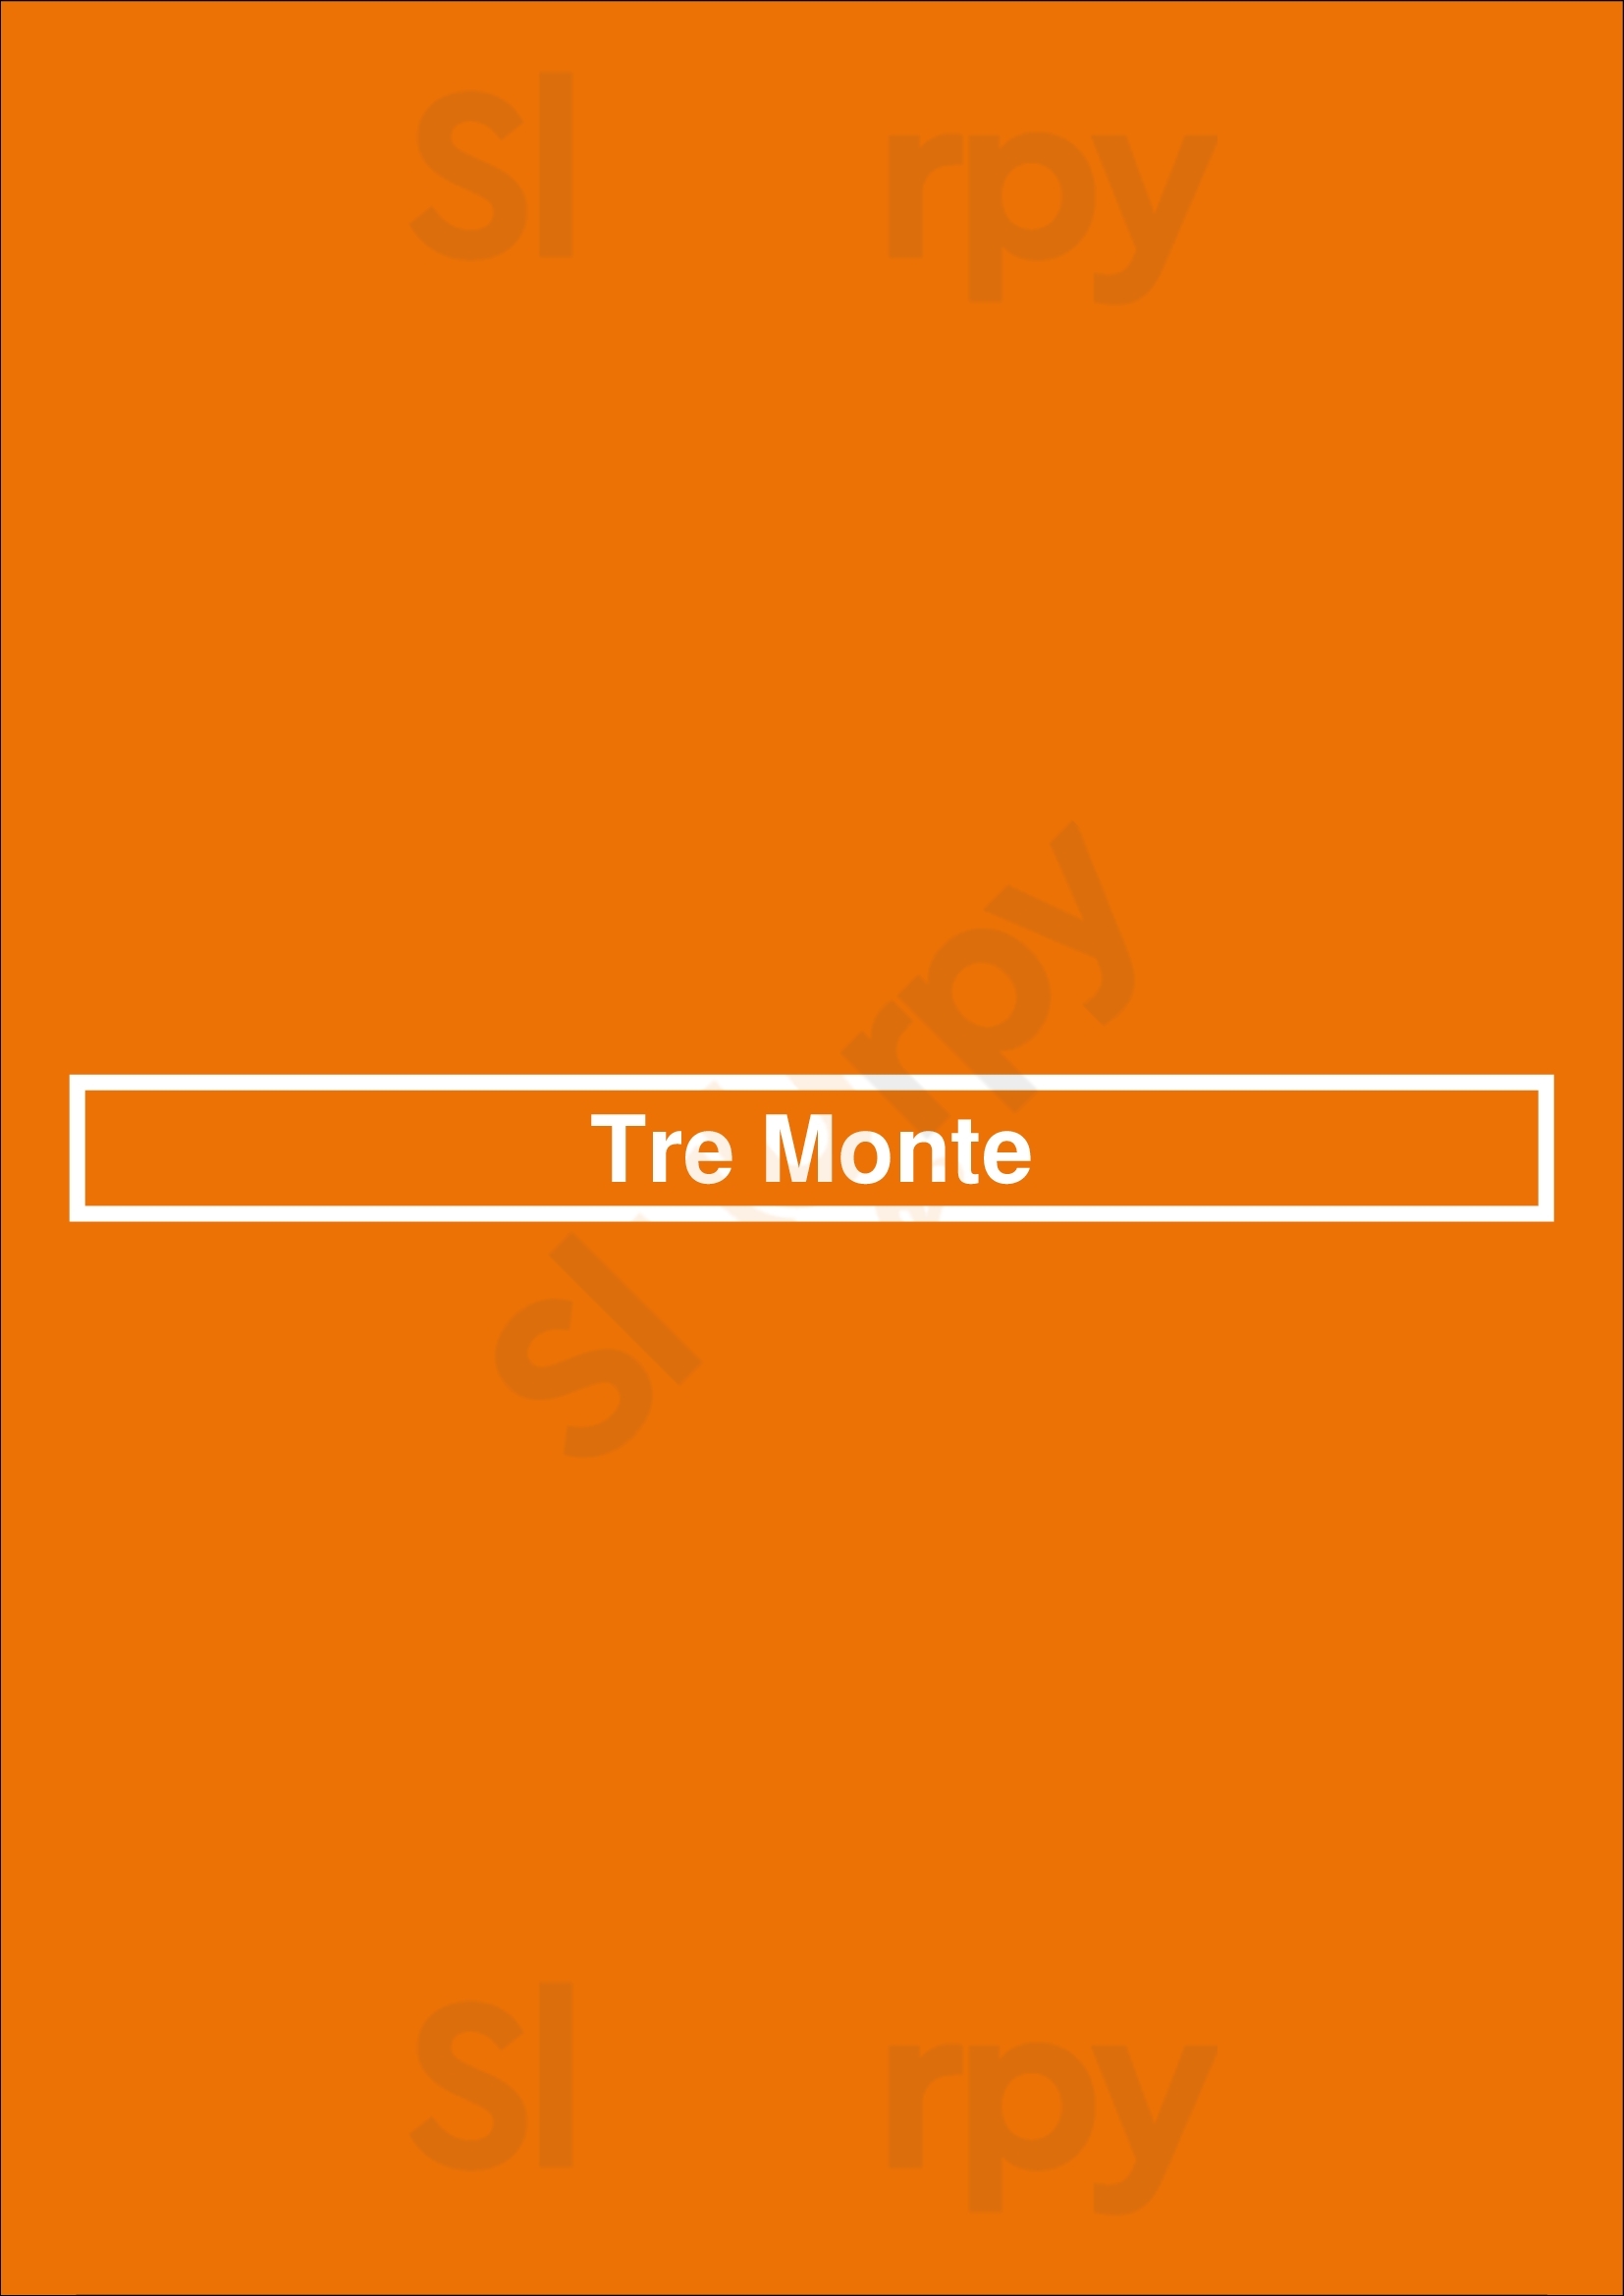 Tre Monte Boston Menu - 1